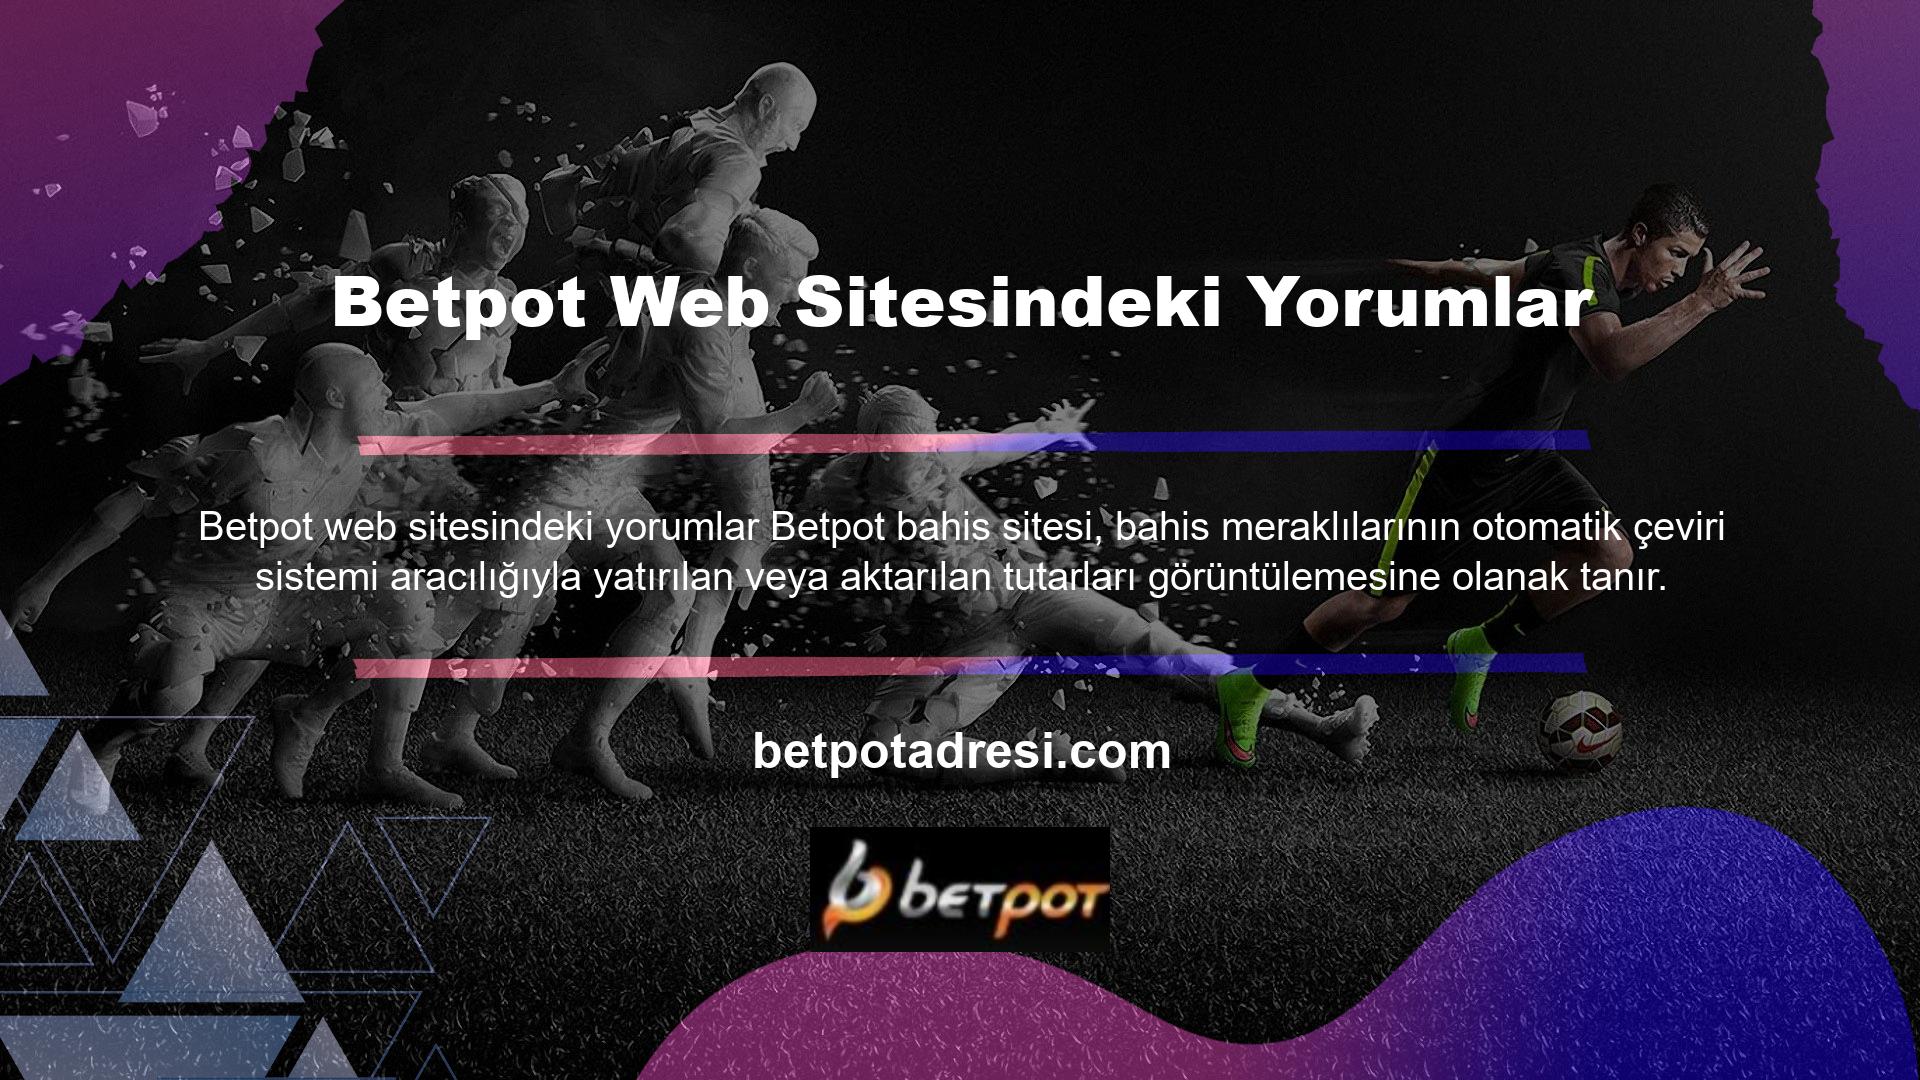 Bahis meraklıları ayrıca spor bahis sitelerinden satın alınan Betpot bahis sitelerinde heyecan verici canlı bahisler ile oyunlarının zirvesinde olma şansına da sahipler